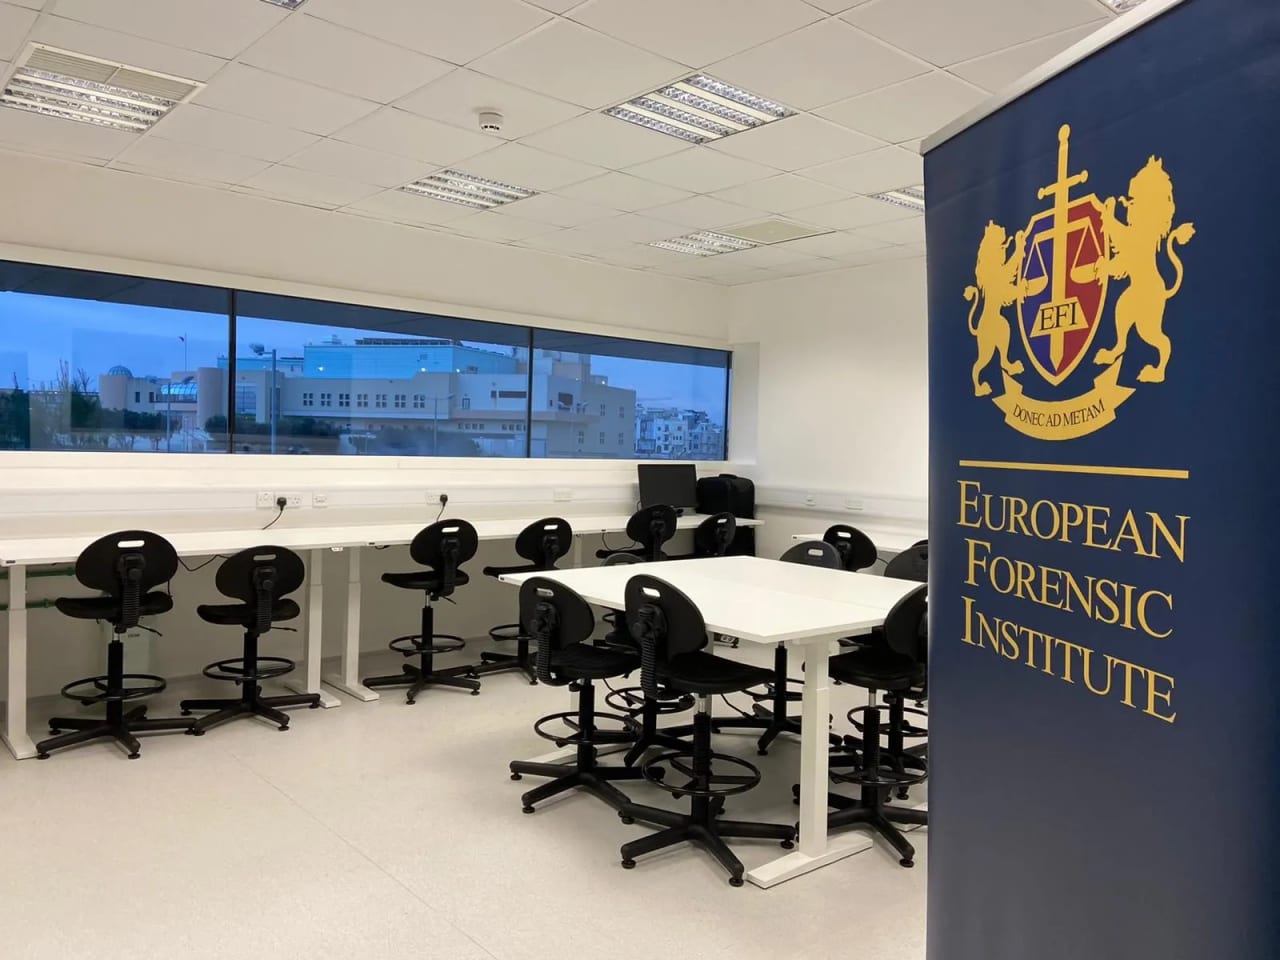 European Forensic Institute